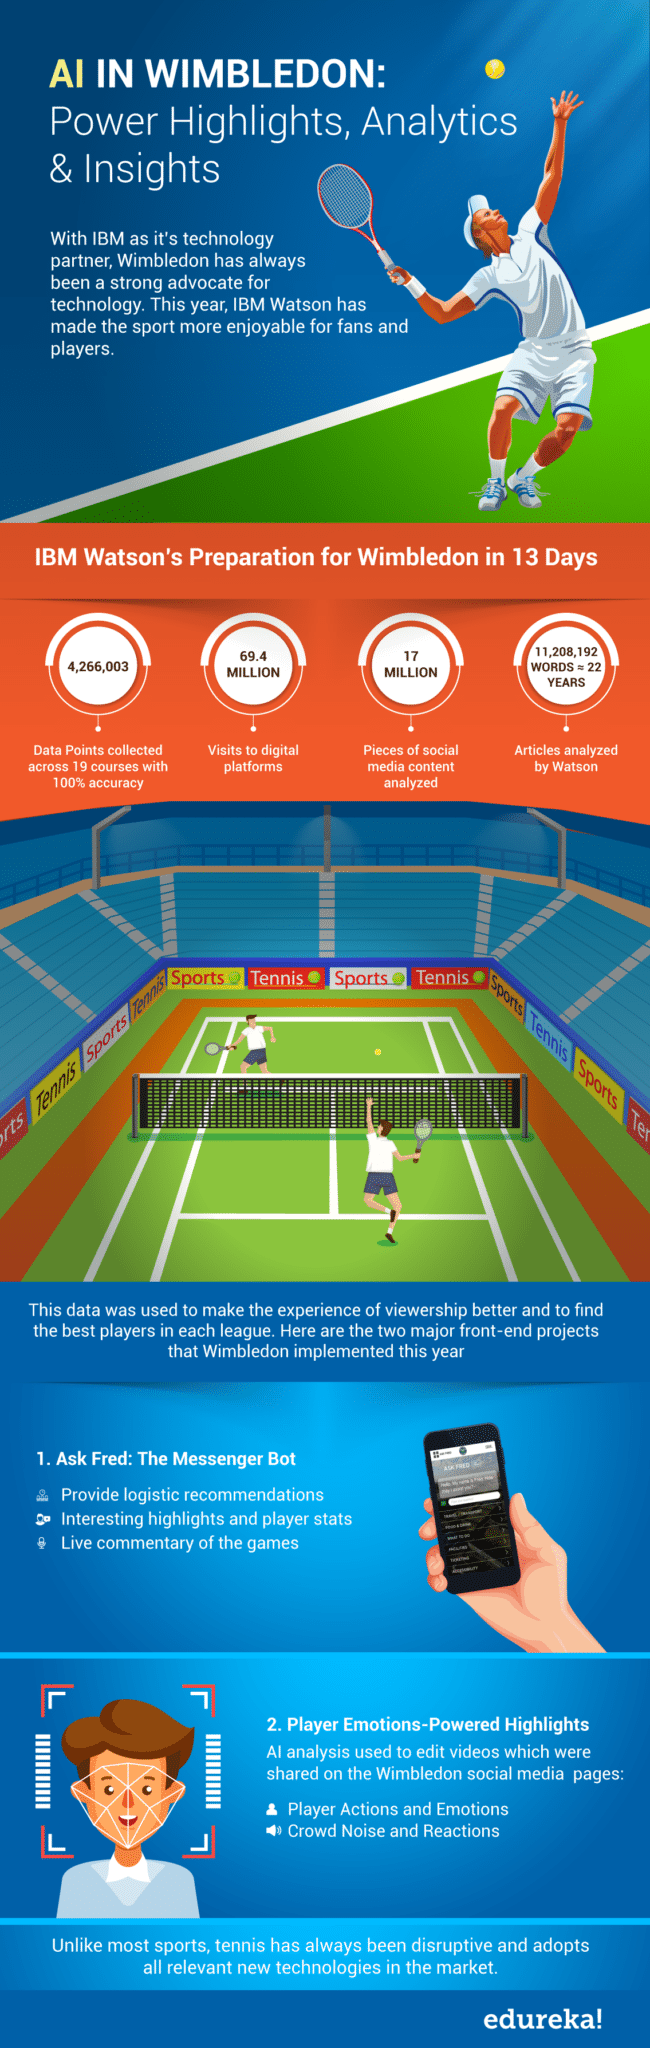 AI ve Wimbledonu: Nejvýznamnější výkony, analytika a přehledy